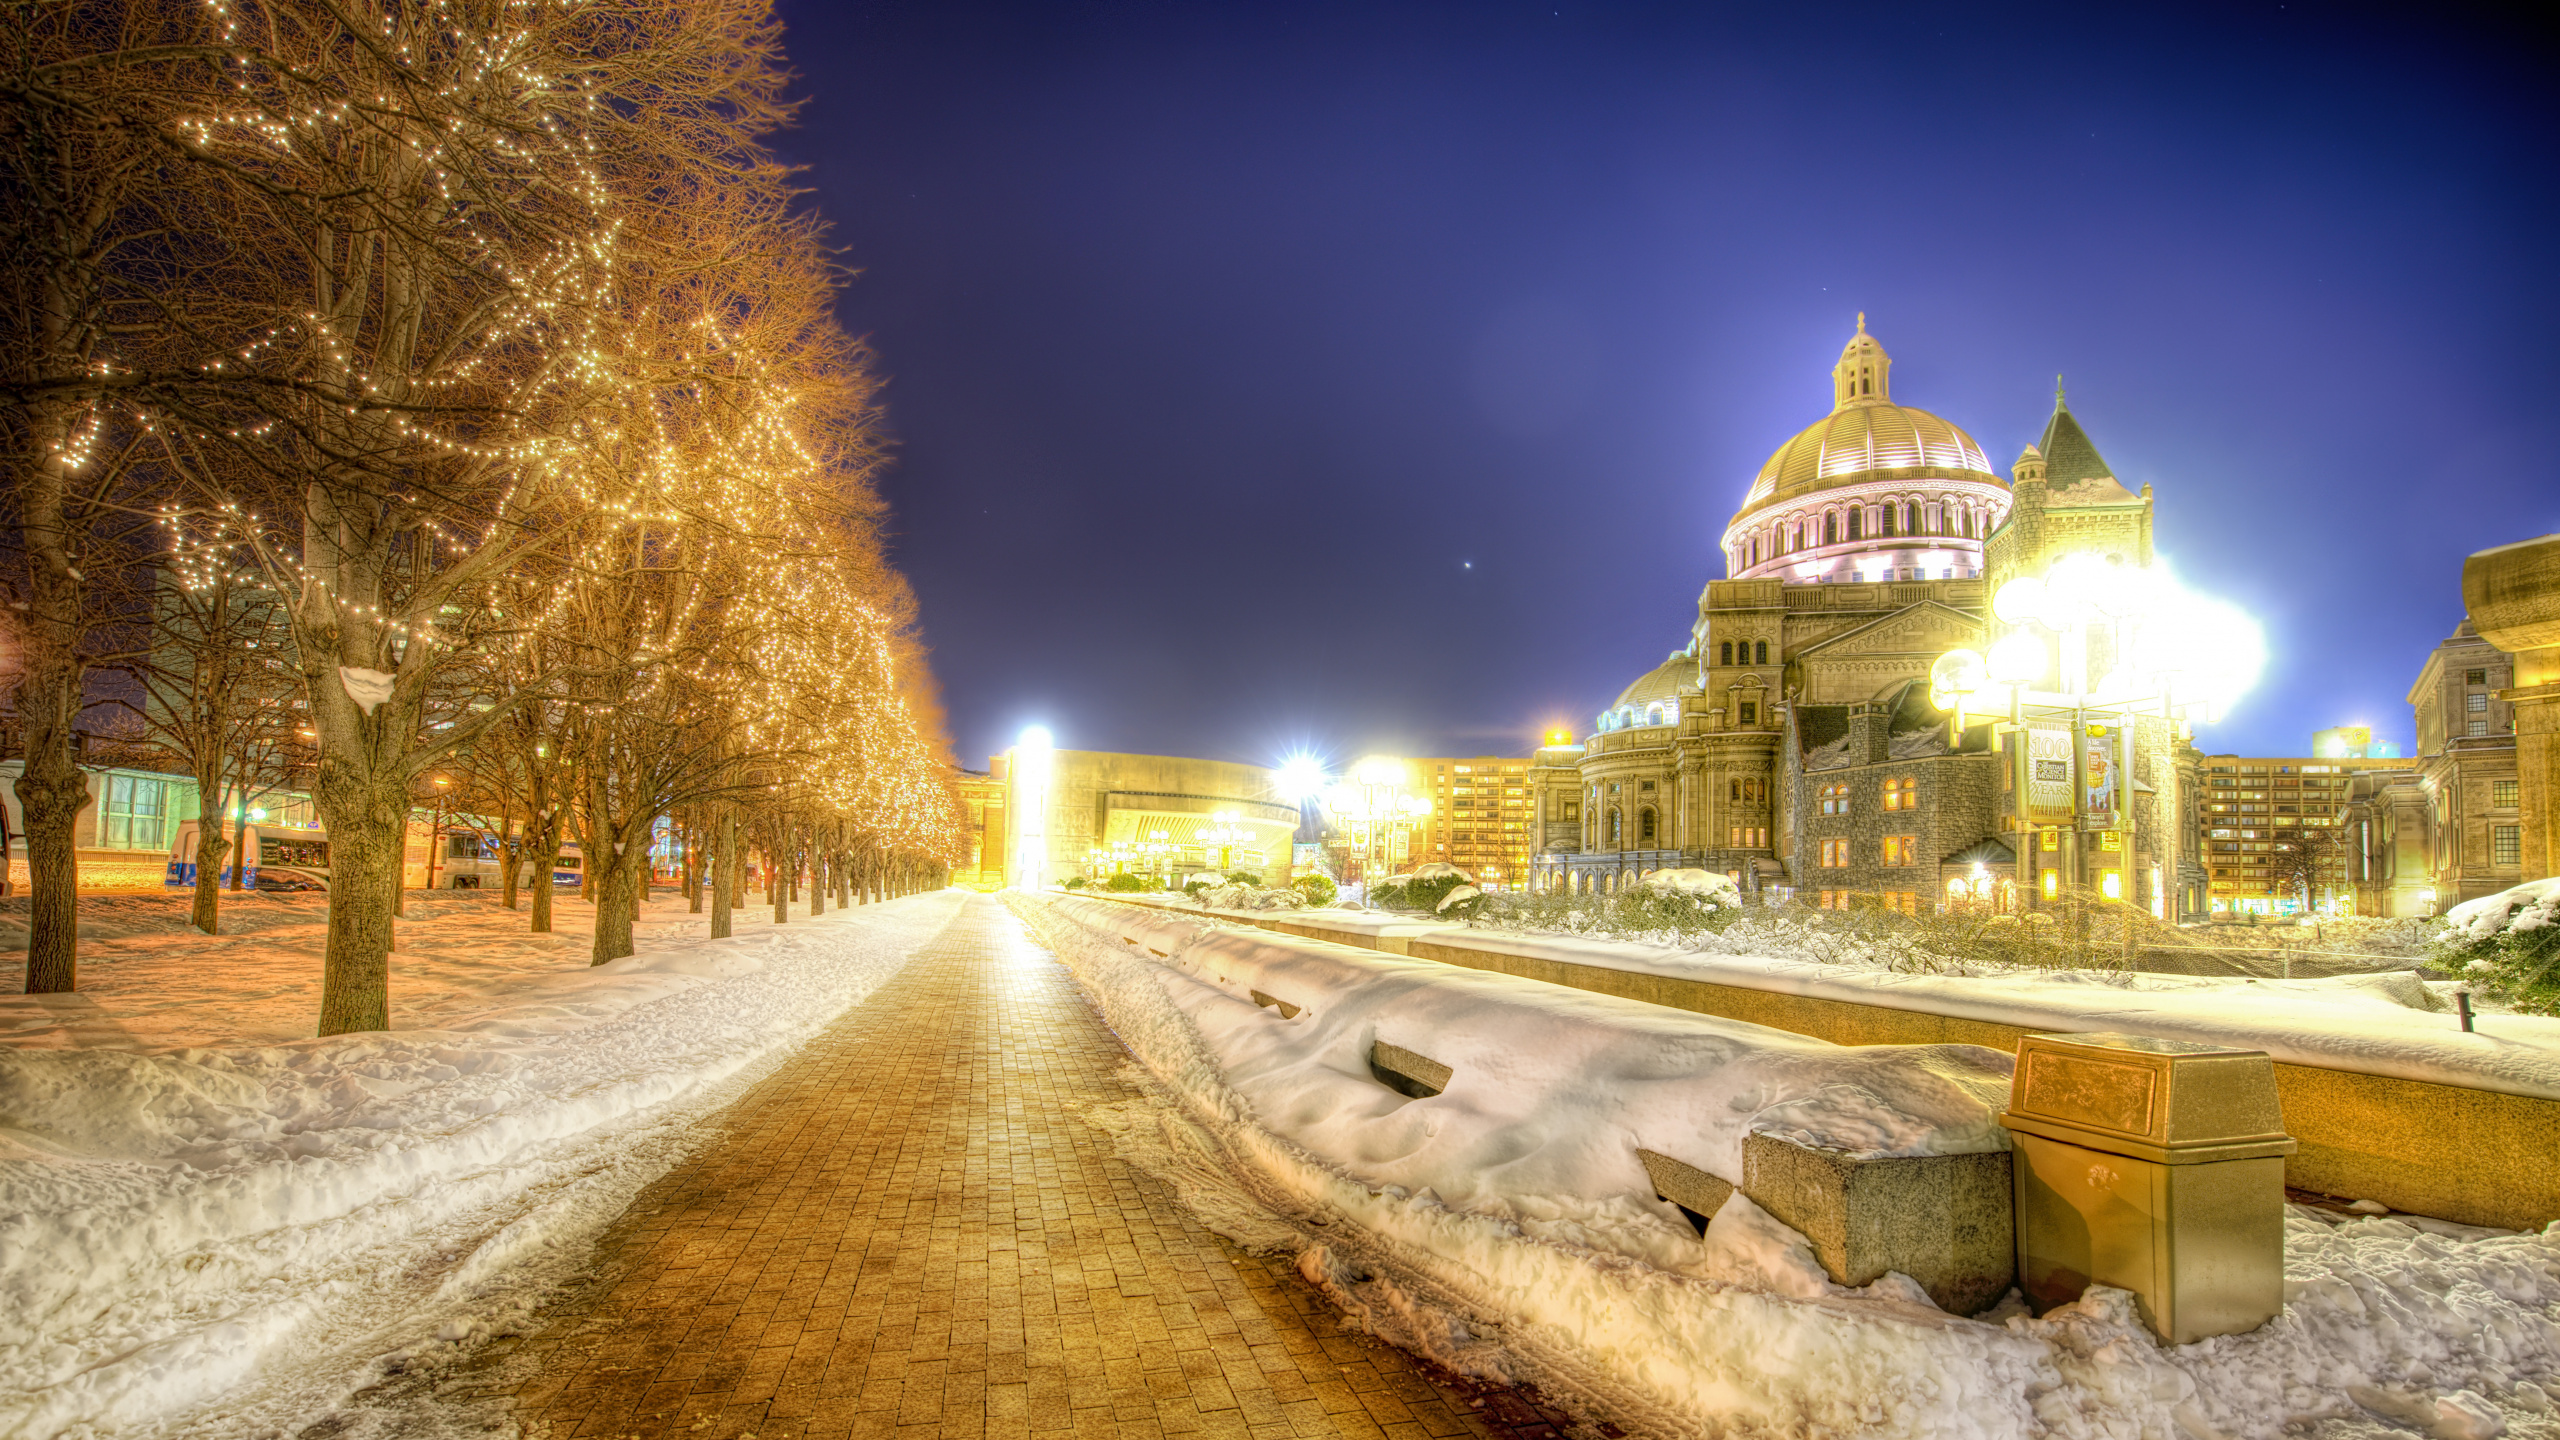 波士顿, 里程碑, 性质, 冬天, 天空 壁纸 2560x1440 允许